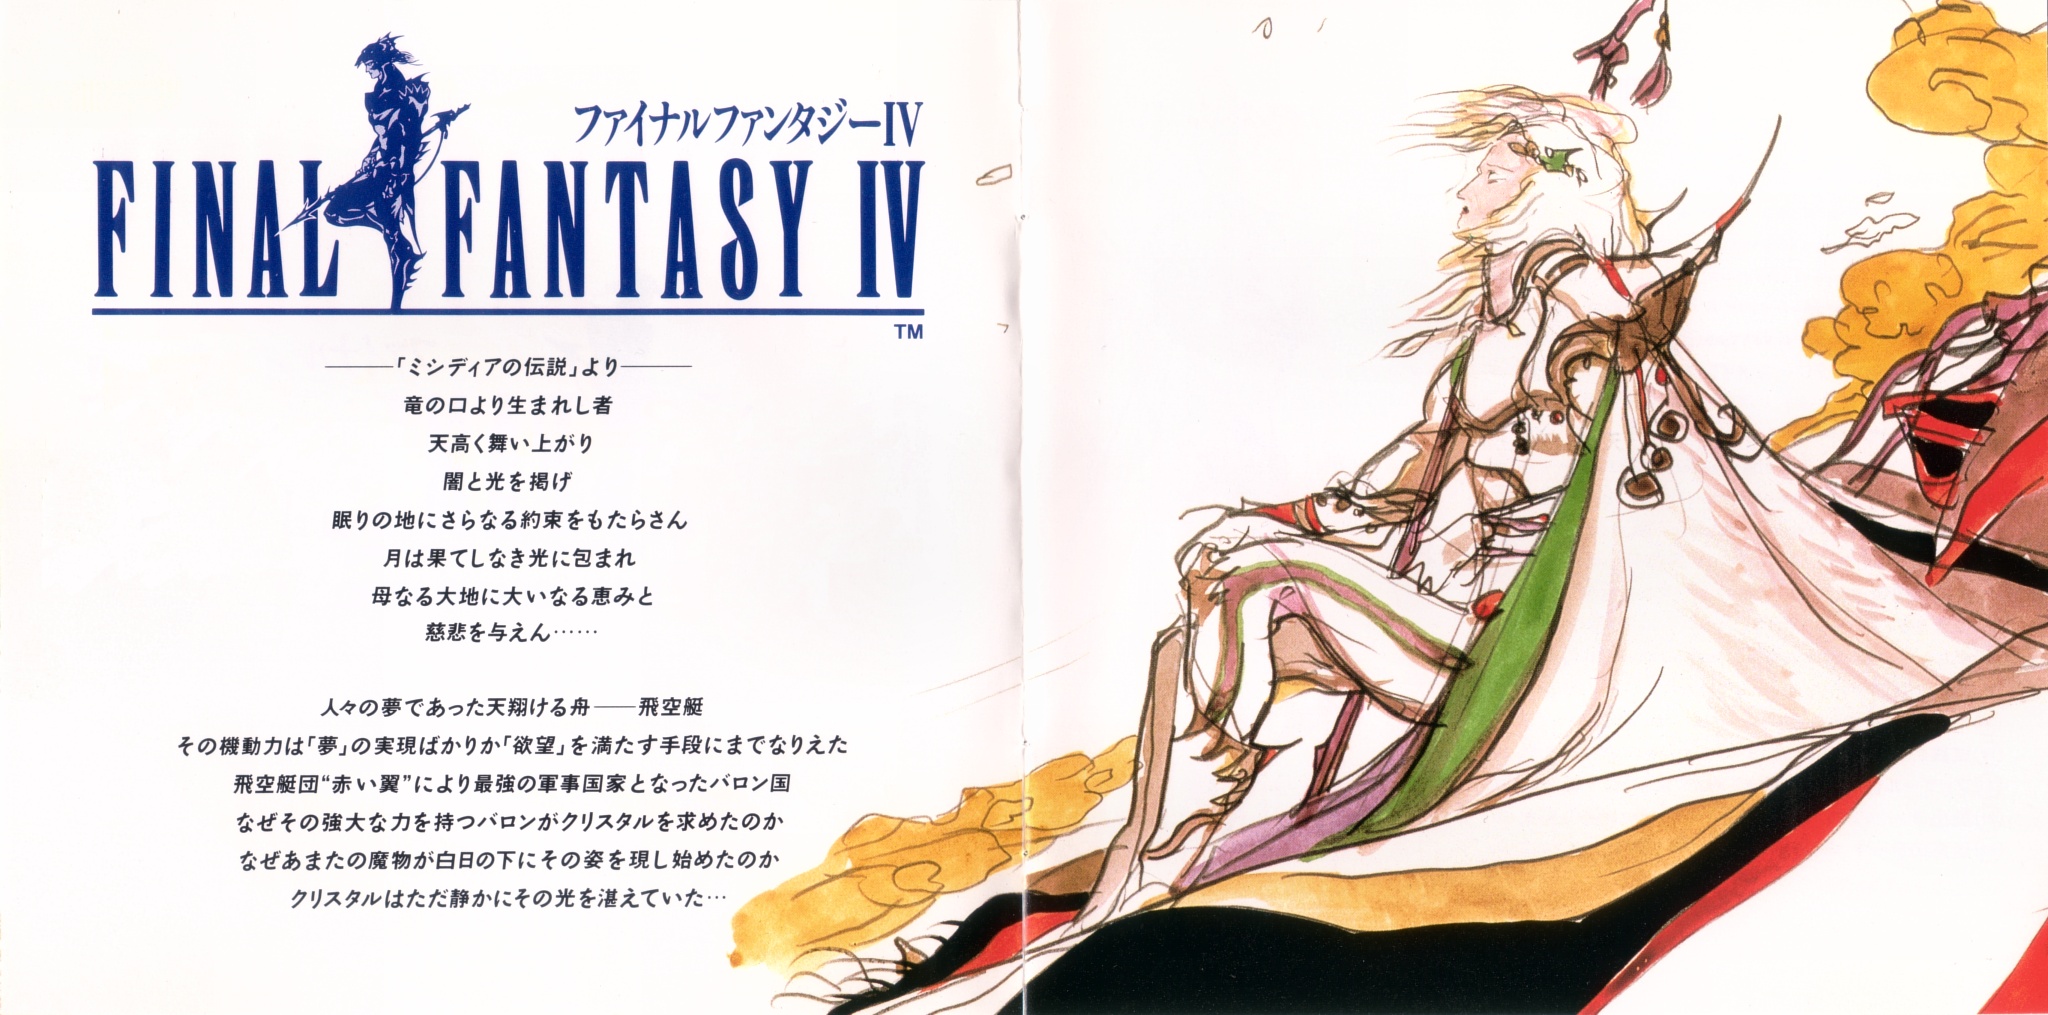 02 - Final Fantasy IV Original Sound Version - Booklet Page 1-2.jpg